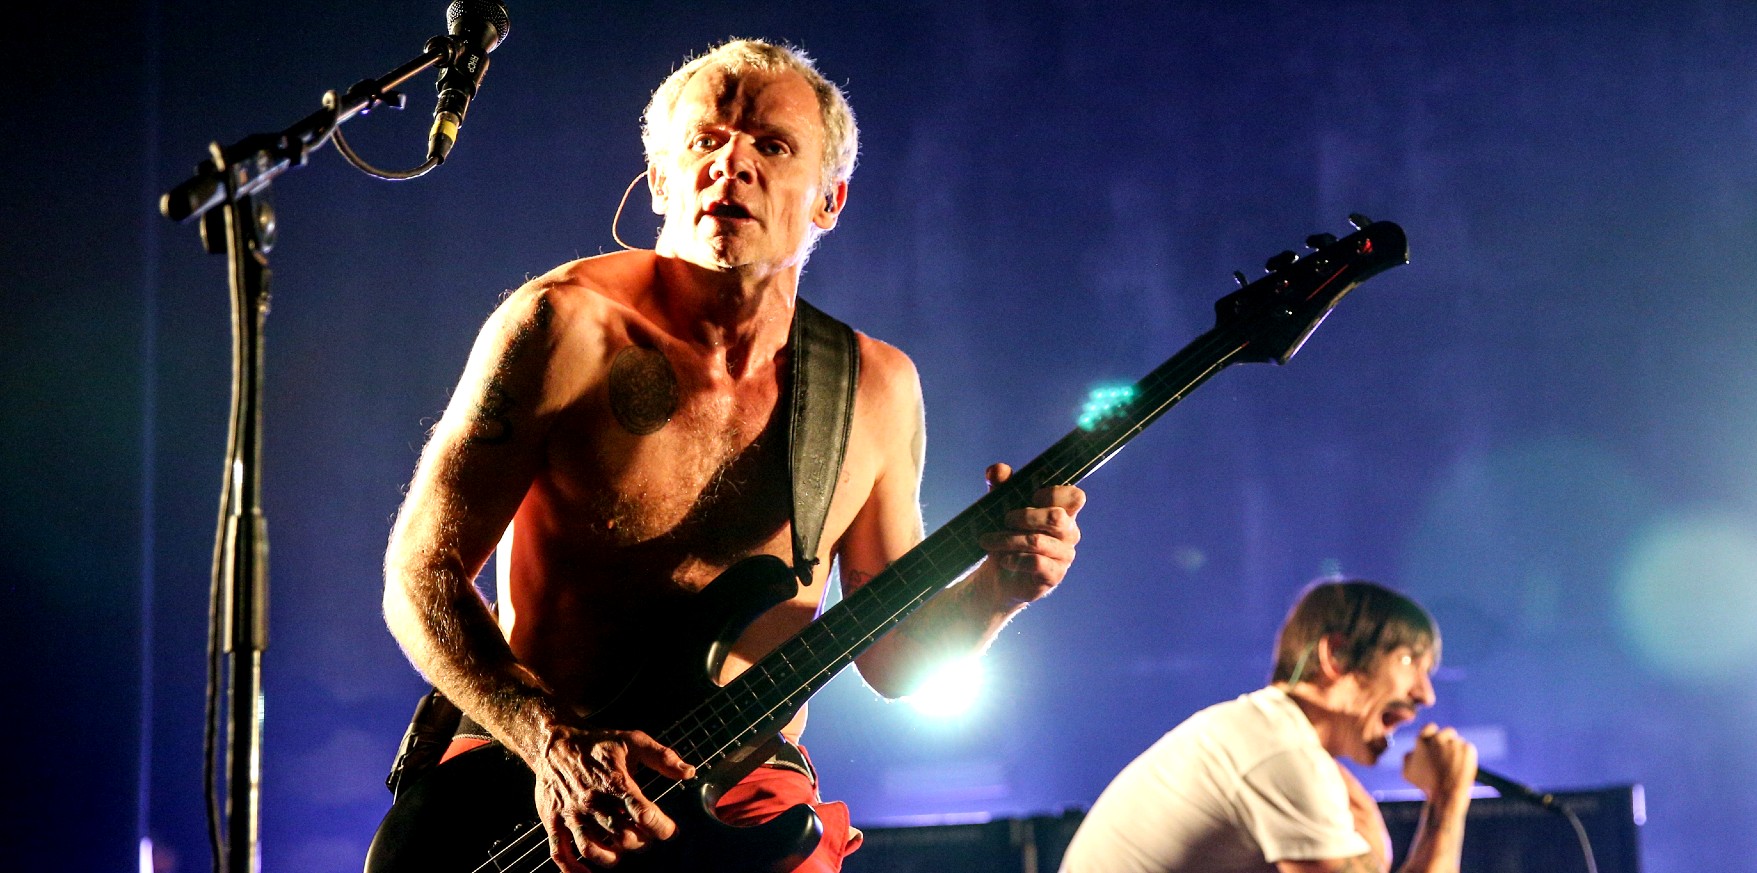 Ο Flea των Red Hot Chili Peppers στη σειρά “Obi-Wan Kenobi”